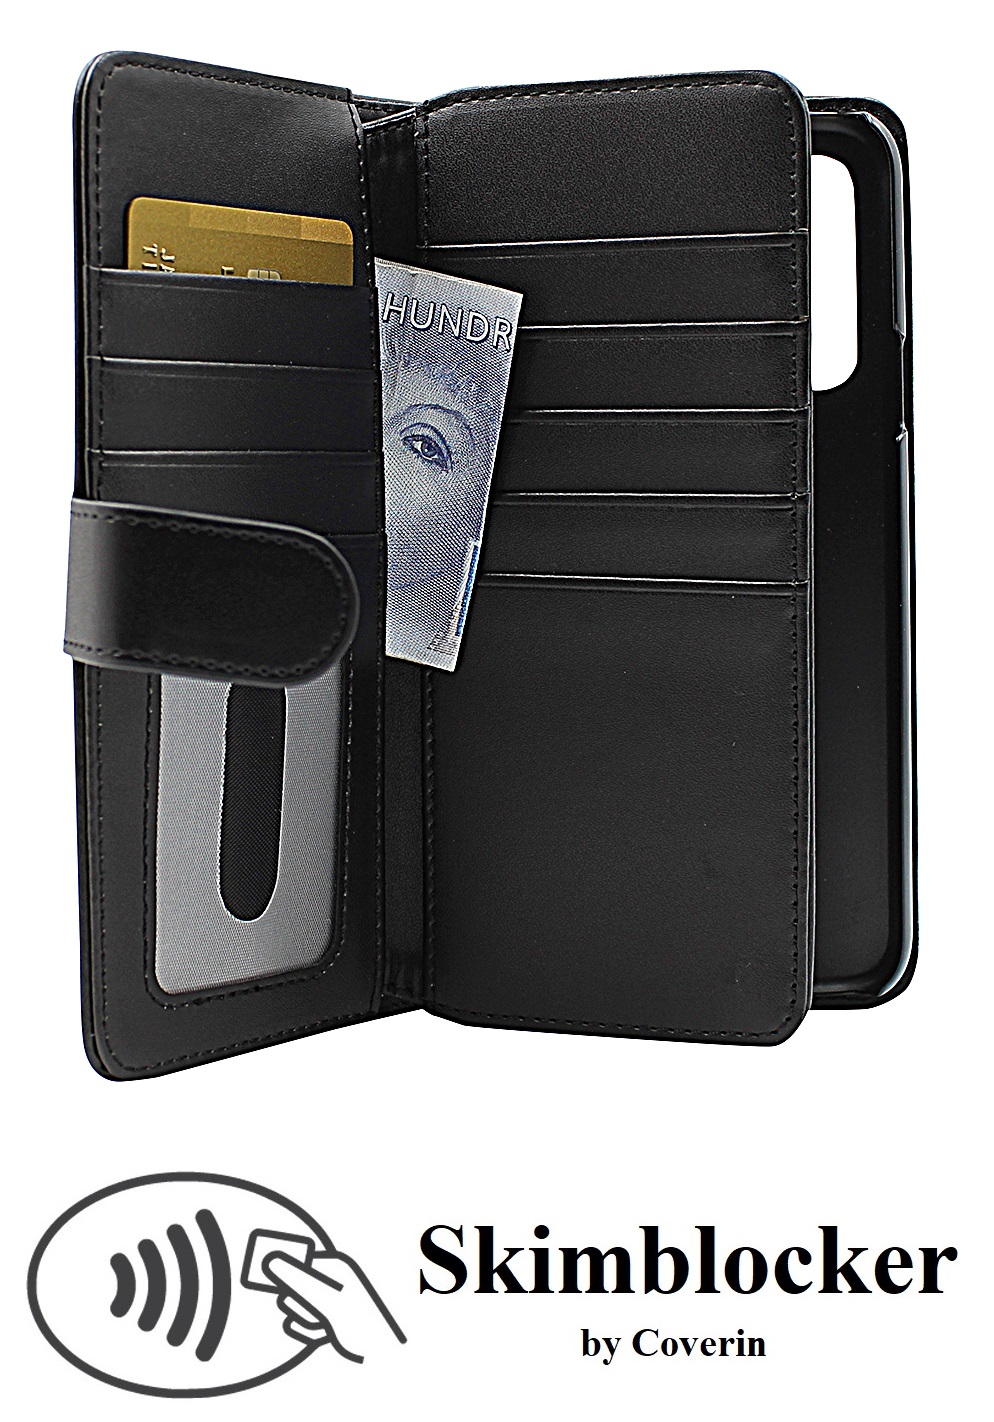 Skimblocker XL Wallet Doro 8080